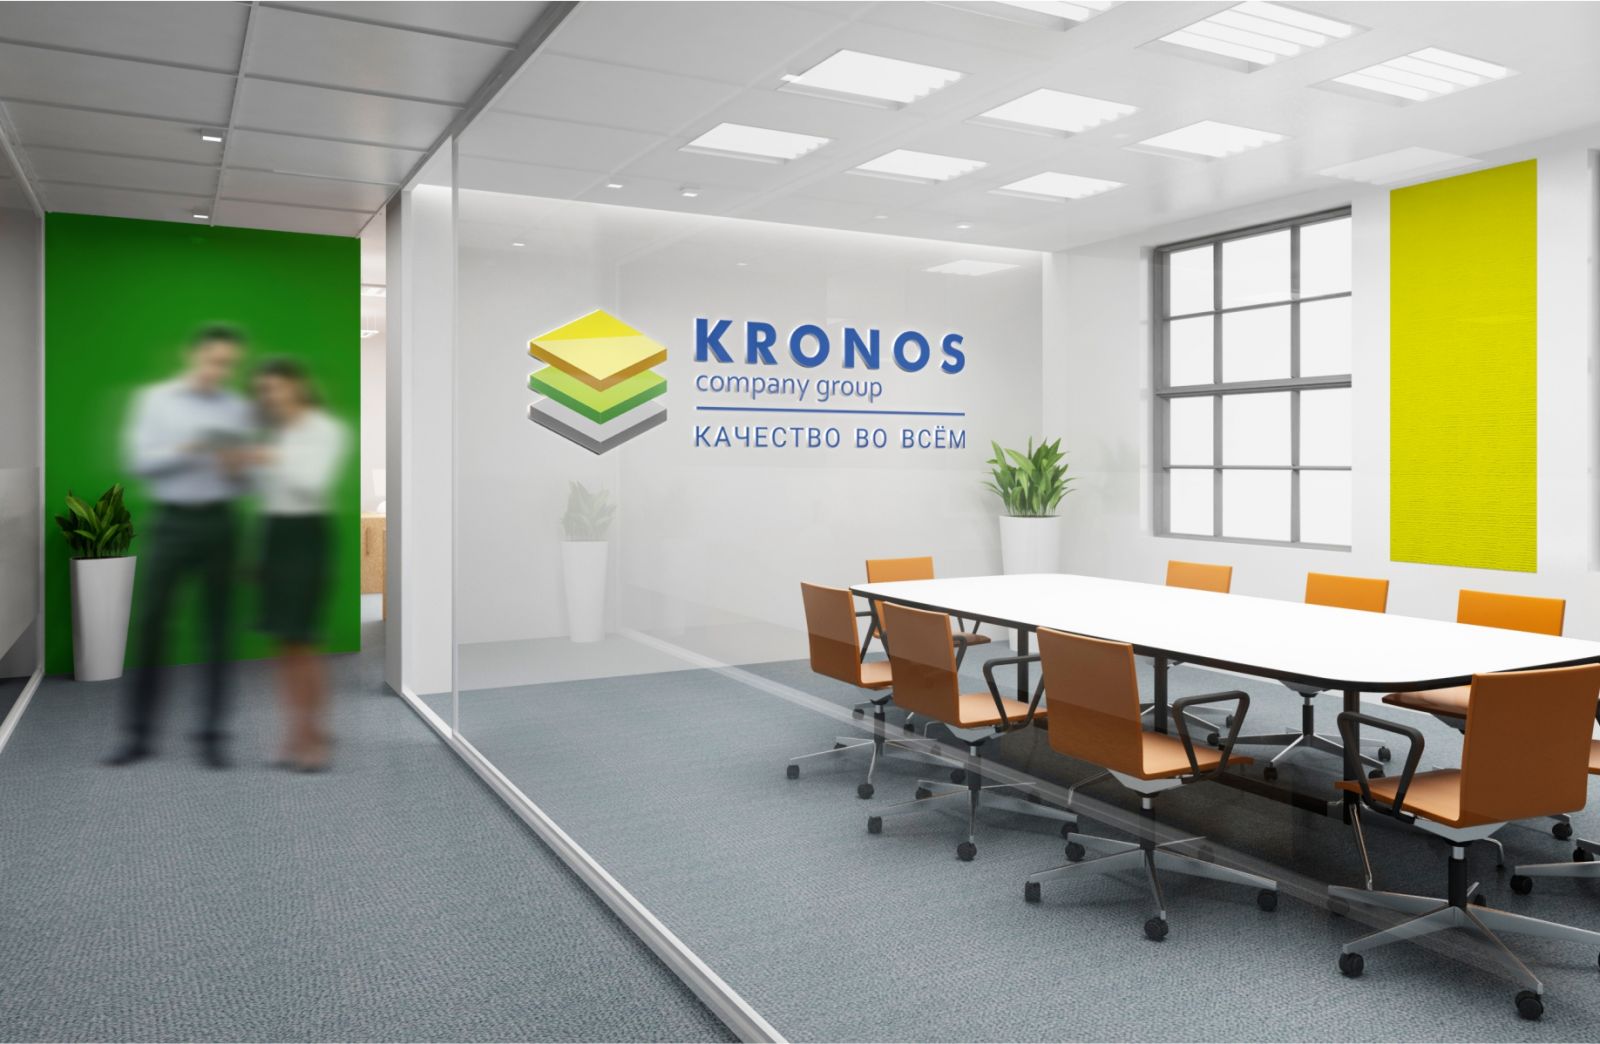 зал компании Kronos с вывеской на стене